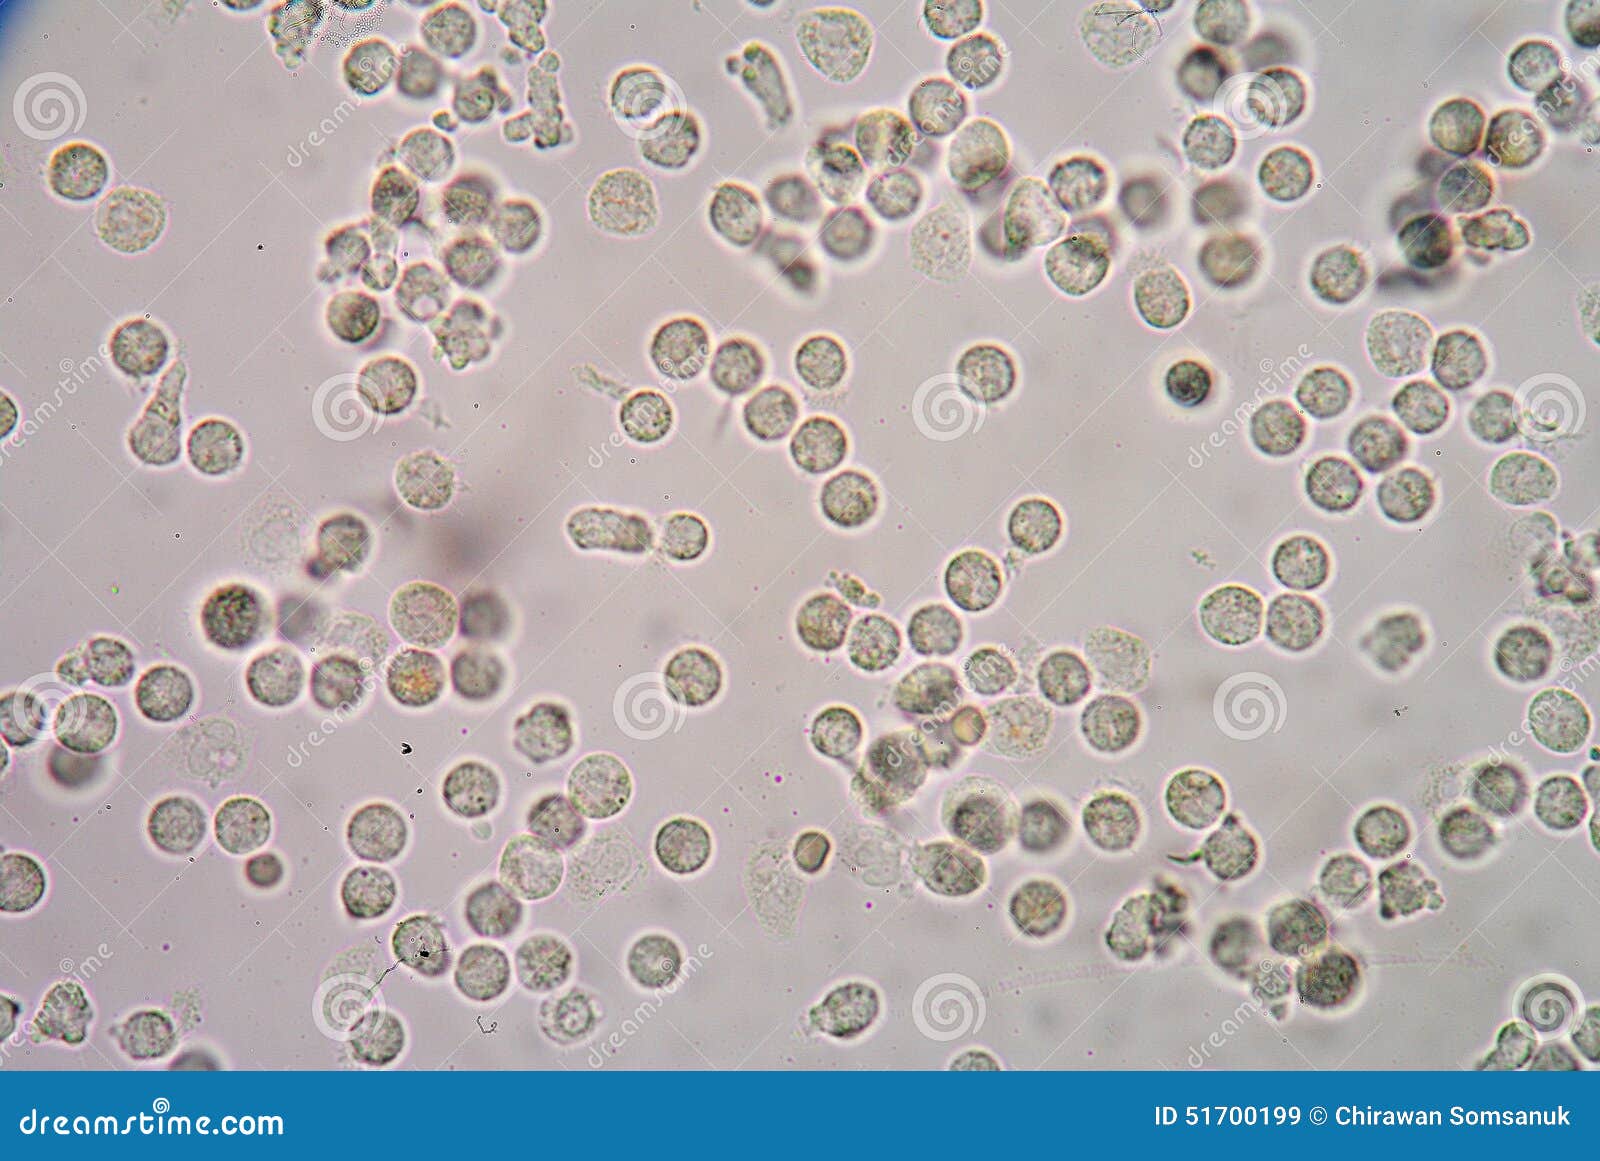 лейкоцитов нет но слизь в сперме фото 24